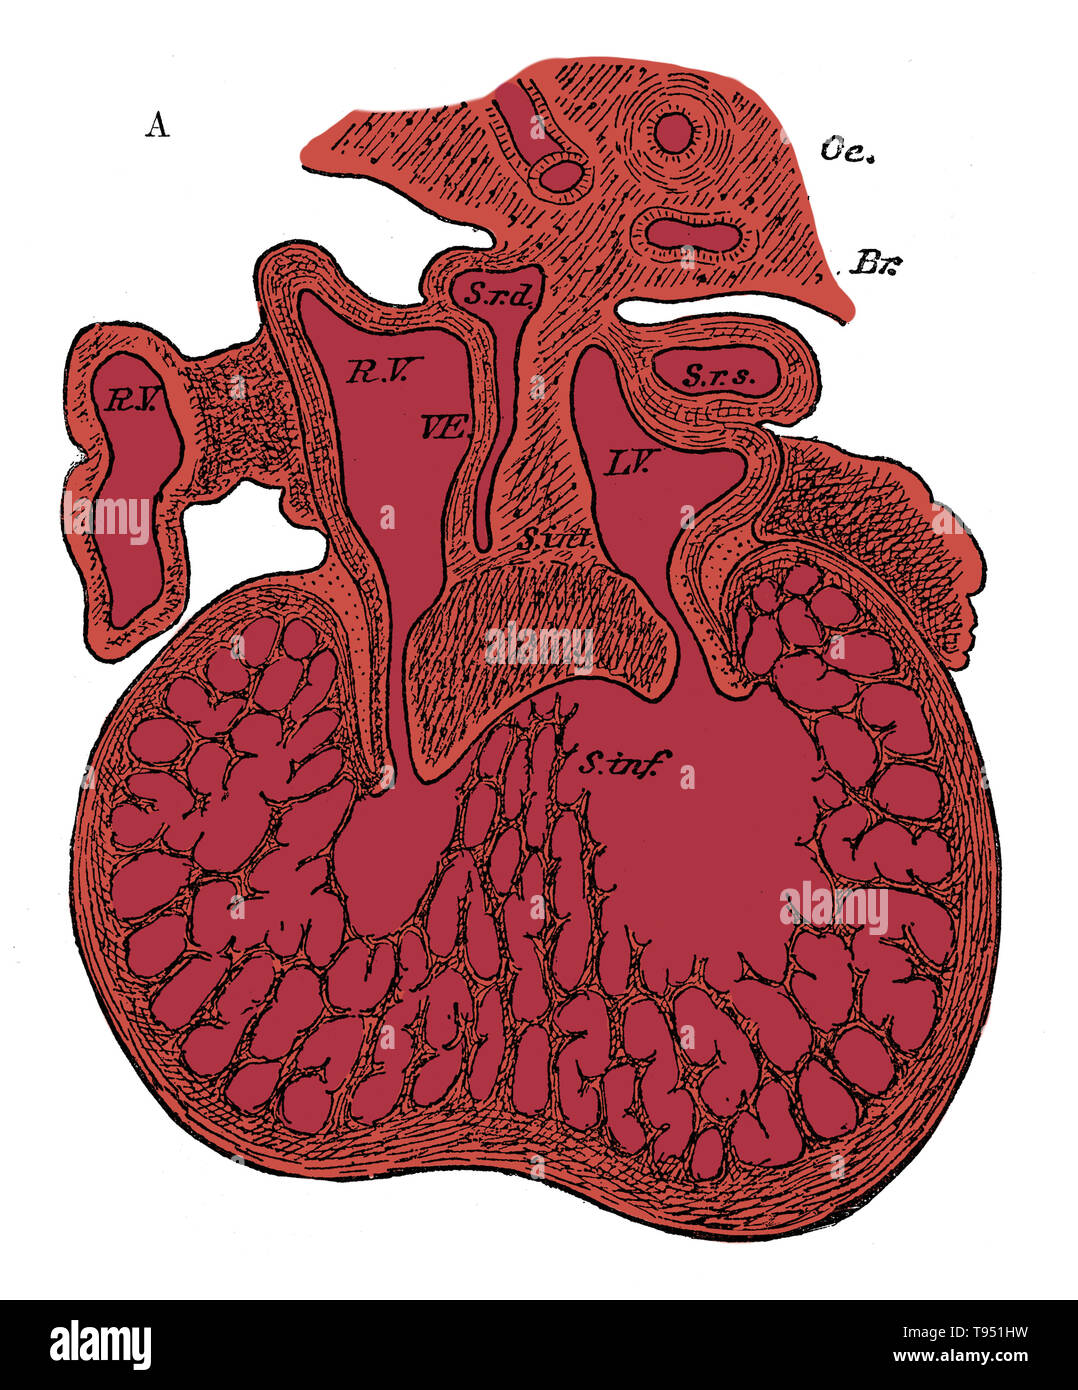 La Section à travers le cœur des droits de l'embryon montrant la formation du septum cardiaque et l'auriculo-ventriculaire, vannes 5 à 6 semaines. R.V, l'oreillette droite ; L.V, oreillette gauche ; S.r.d, corne de droite ; sinus Sr.s, corne gauche des sinus ; s. int, le septum supérieur et ostium commun (septum intermedium) ; s. inf, déduit du septum ventriculorum ; Ce septum, ainsi que l'essentiel de la ventricule, est une éponge musculaire à ce stade. Oc, de l'œsophage ; Br, des bronches. Banque D'Images